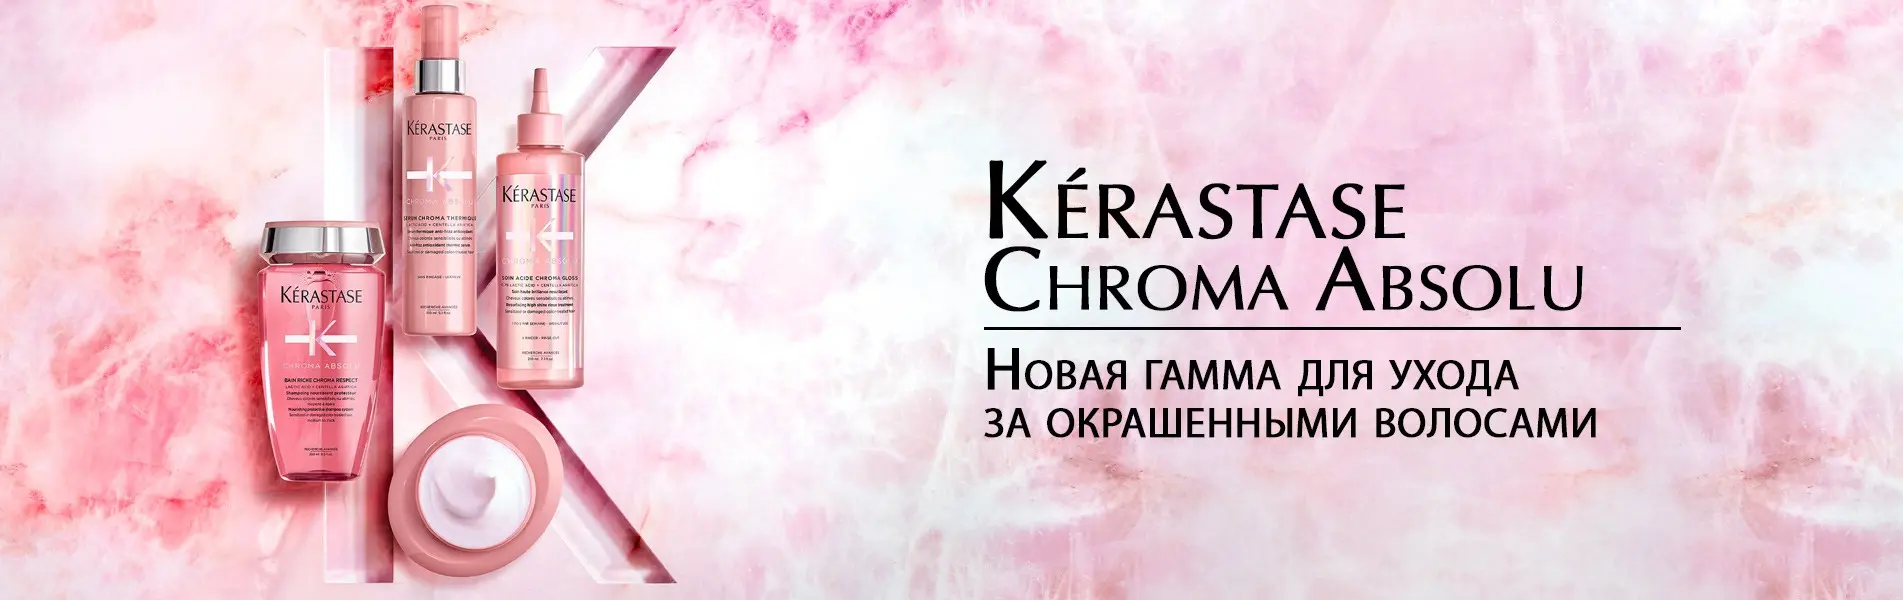 Новинка: Kerastase Chroma Absolu - линия для ухода за окрашенными волосами